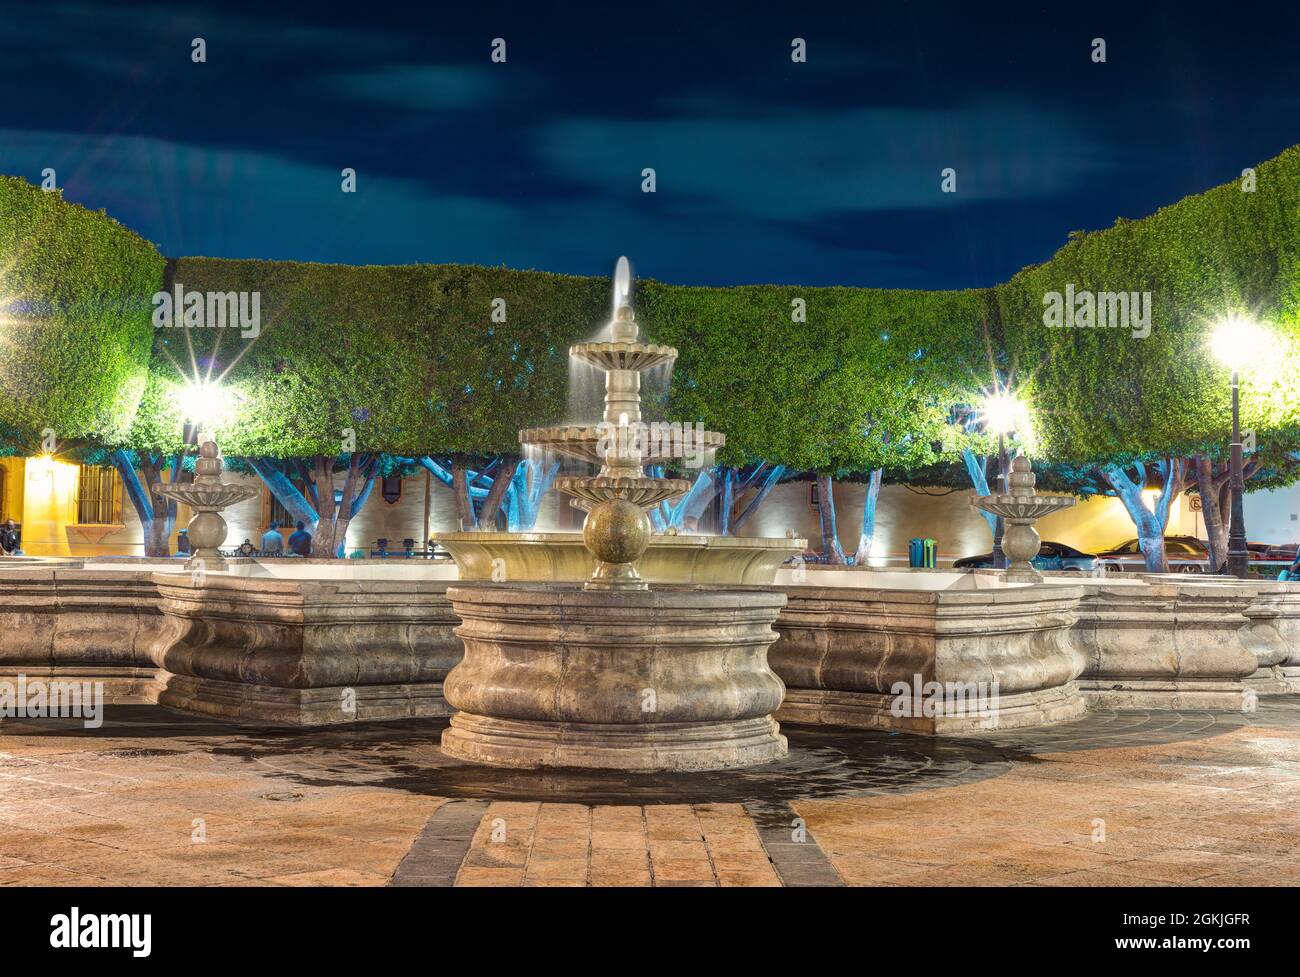 fontaine d'eau dans le centre de la plaza dans le centre de querétaro au mexique, pas de personnes, vue de nuit de la plaza Banque D'Images